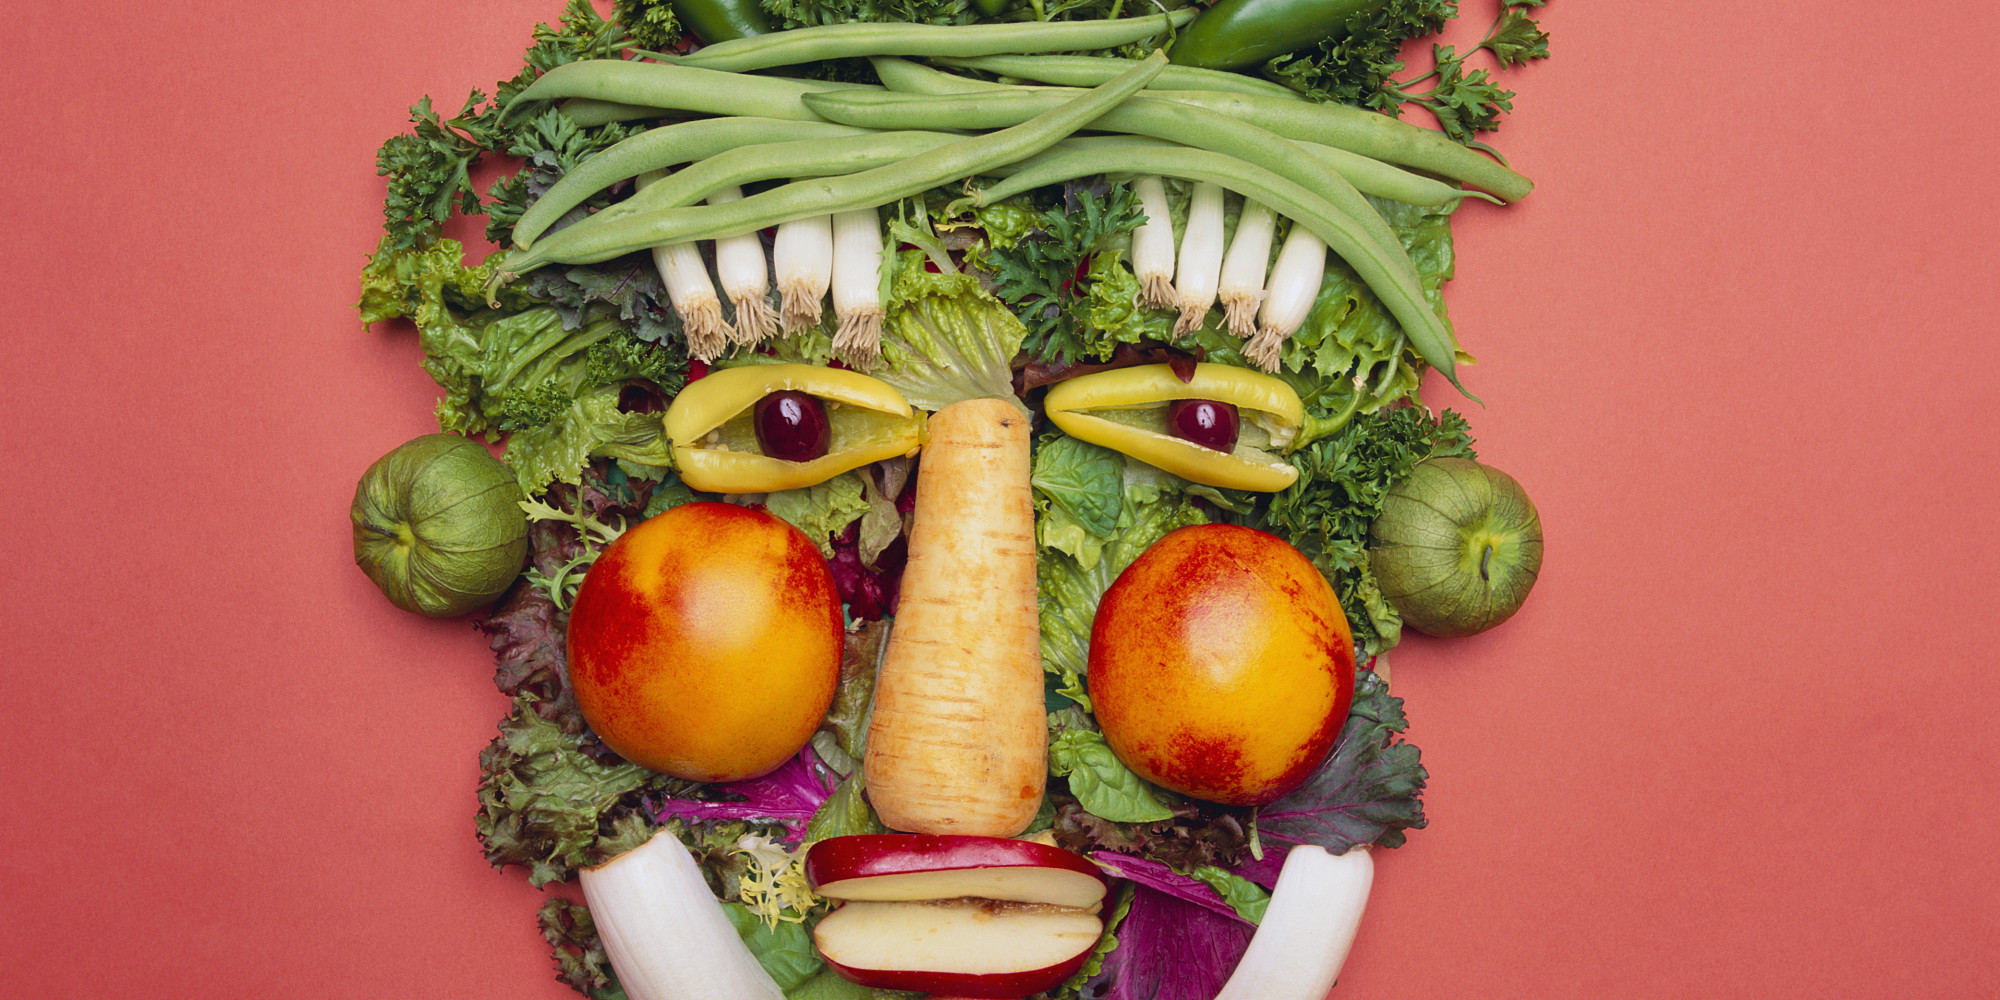 Verduras dispuestas creando una cara